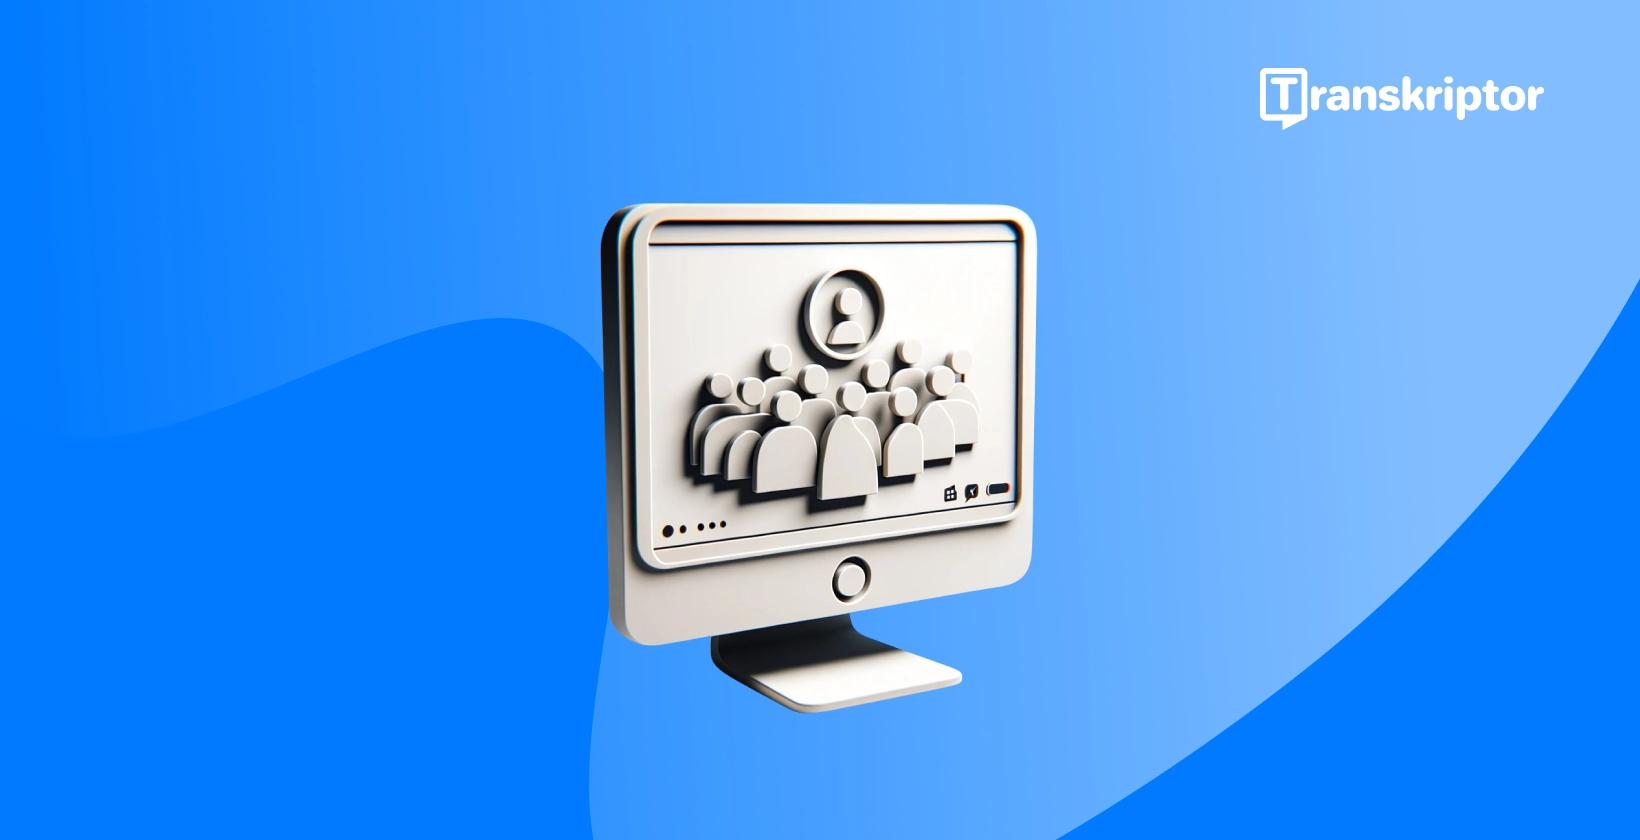 Gravação Webex reuniões com um botão de reprodução e interface de reunião.